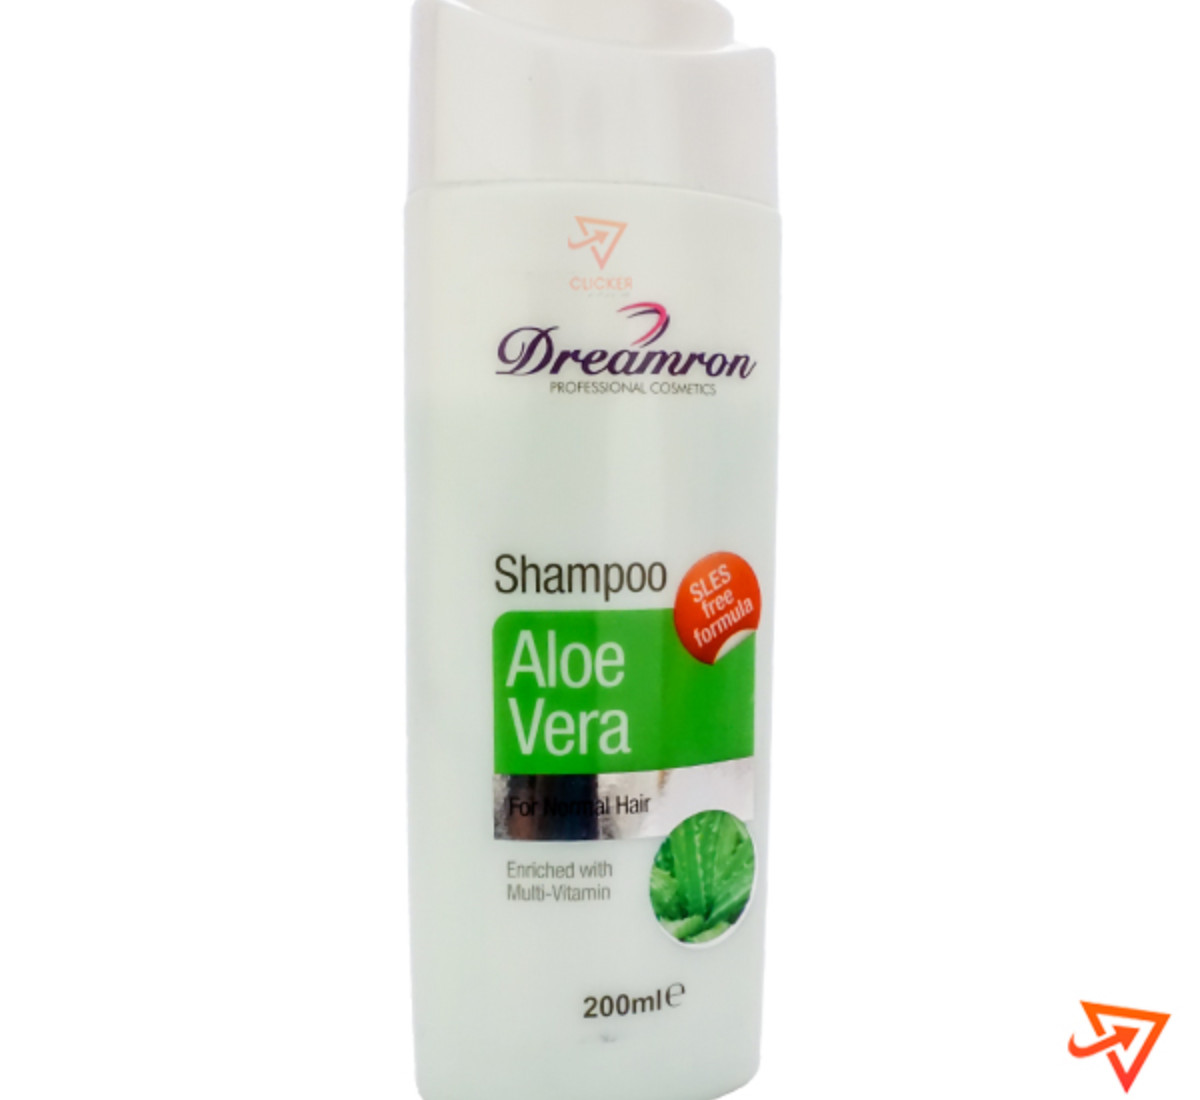 Clicker product 200ml DREAMRON aloe vera shampoo 1102